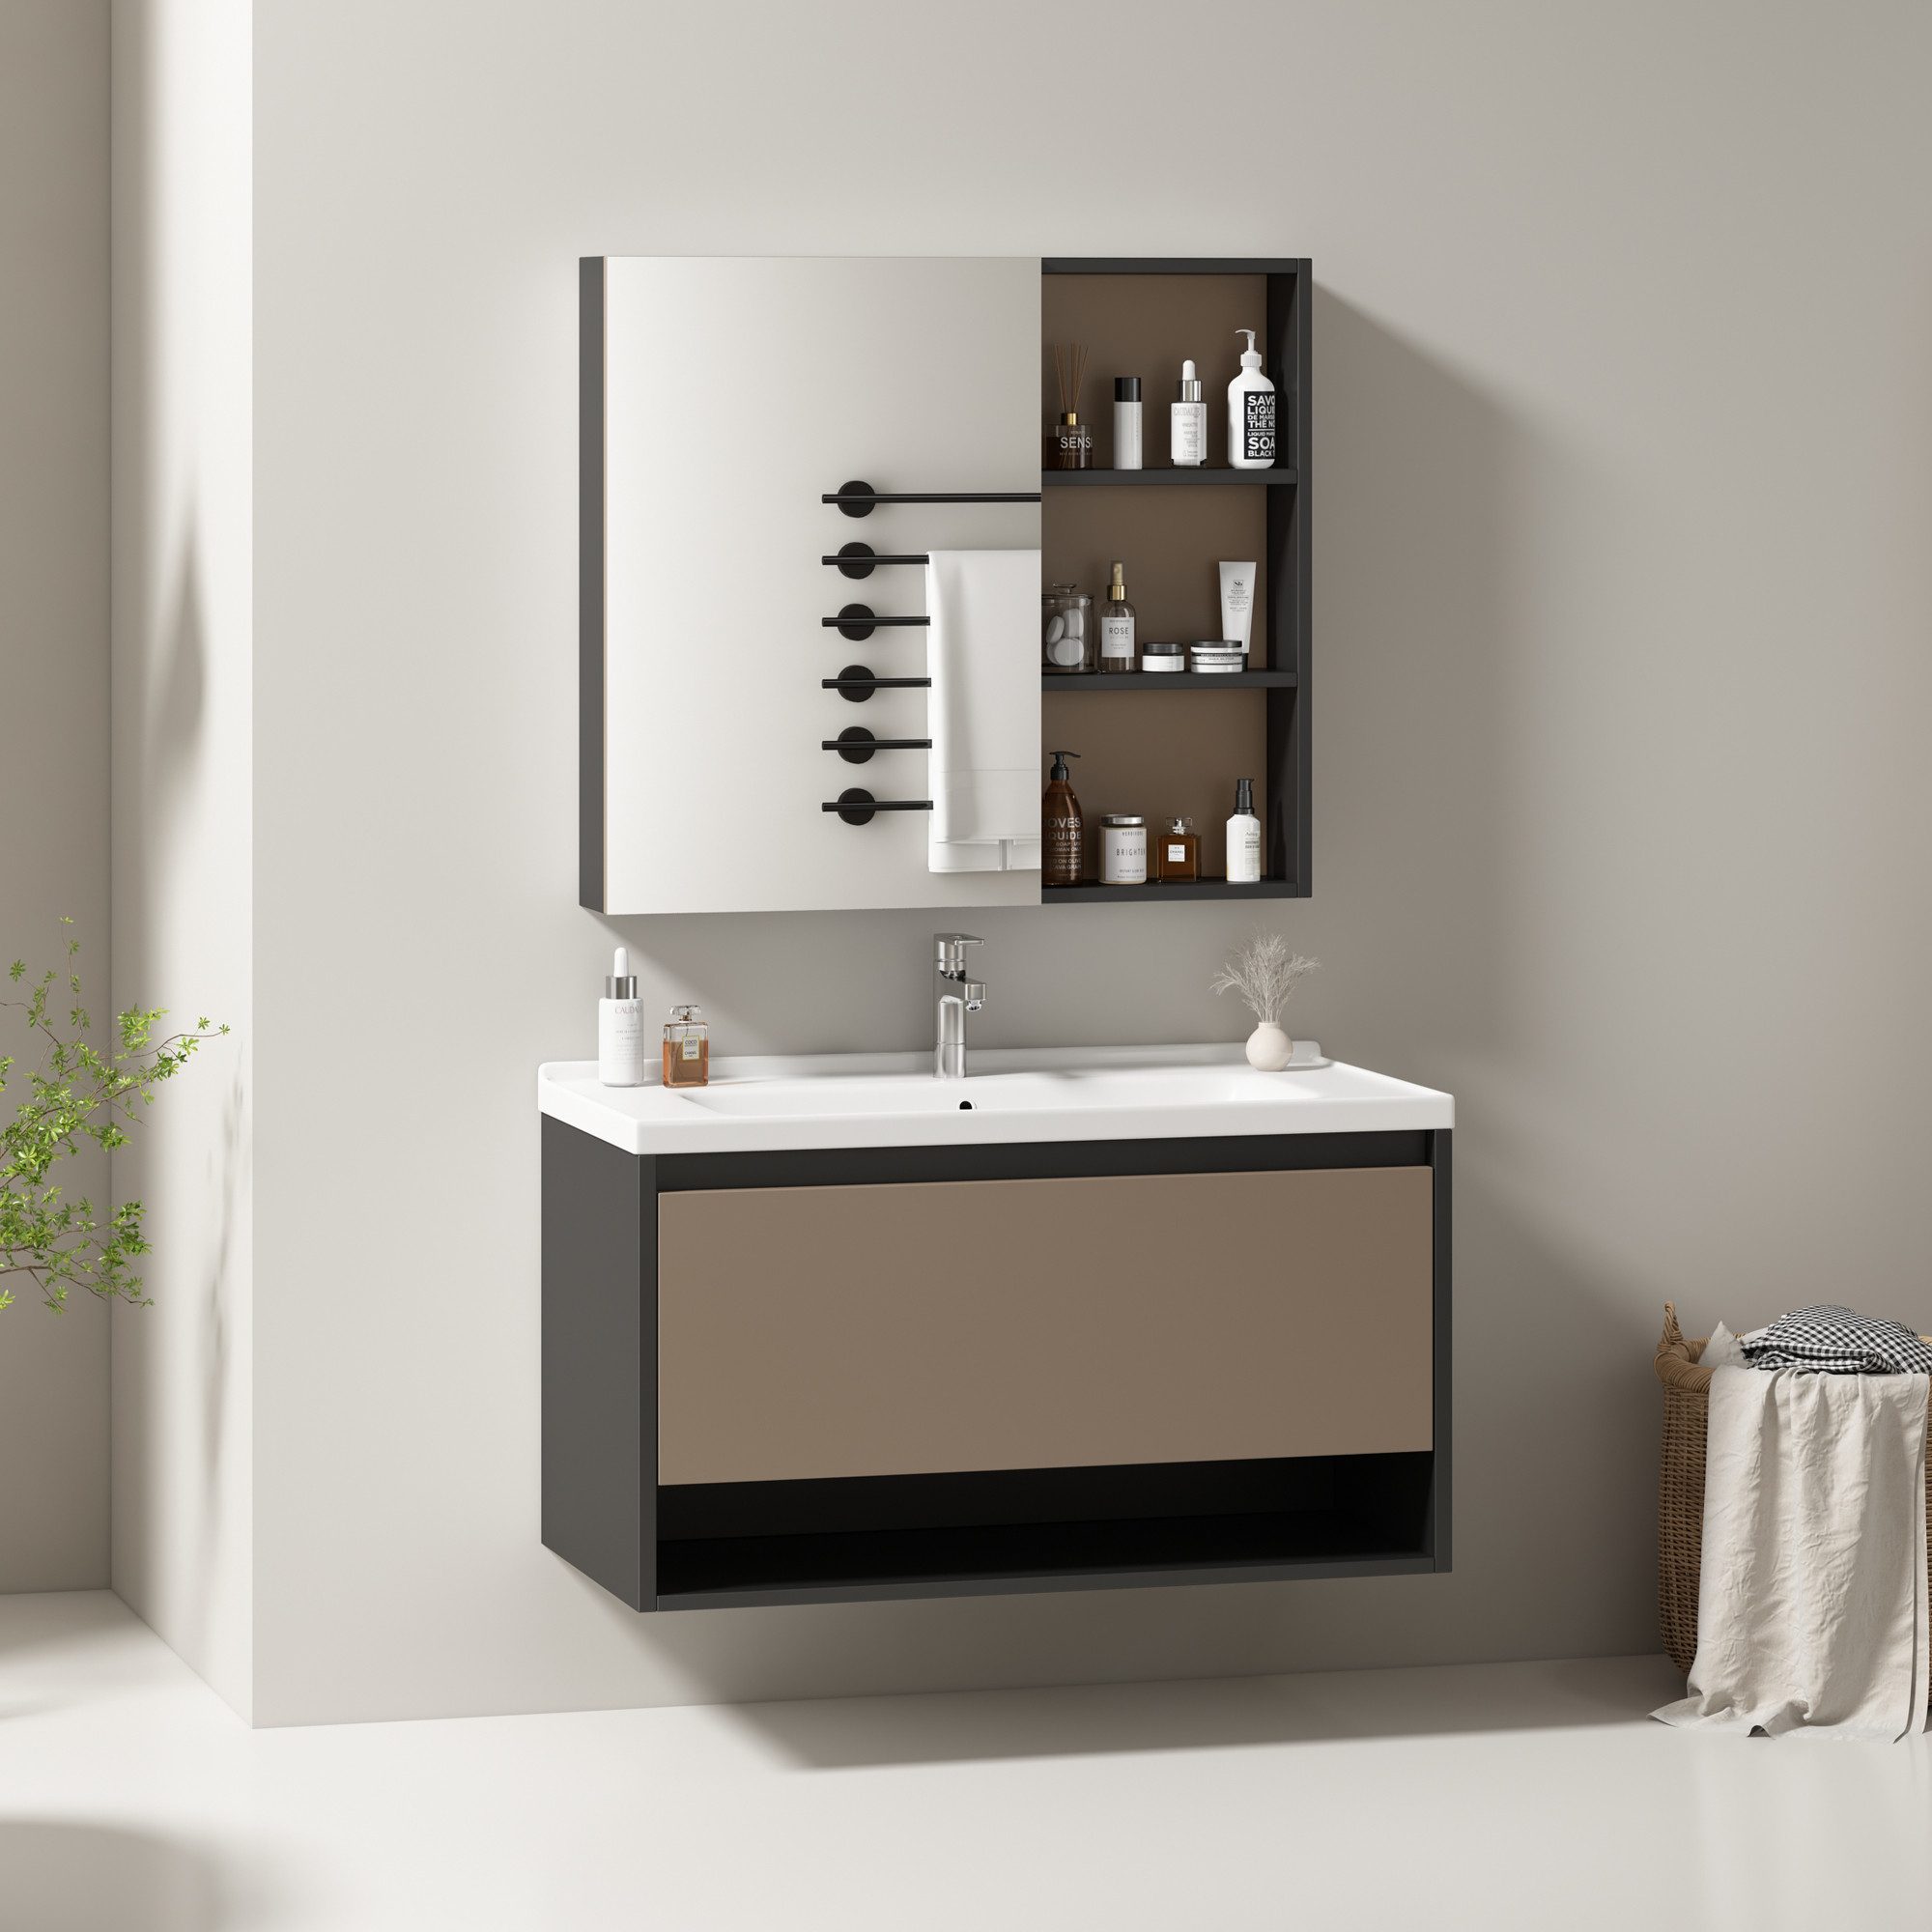 HAUSS SPLOE Badezimmer-Set hängend 90cm breit mit Keramikwaschbecken,Spiegelschrank, hellgrau